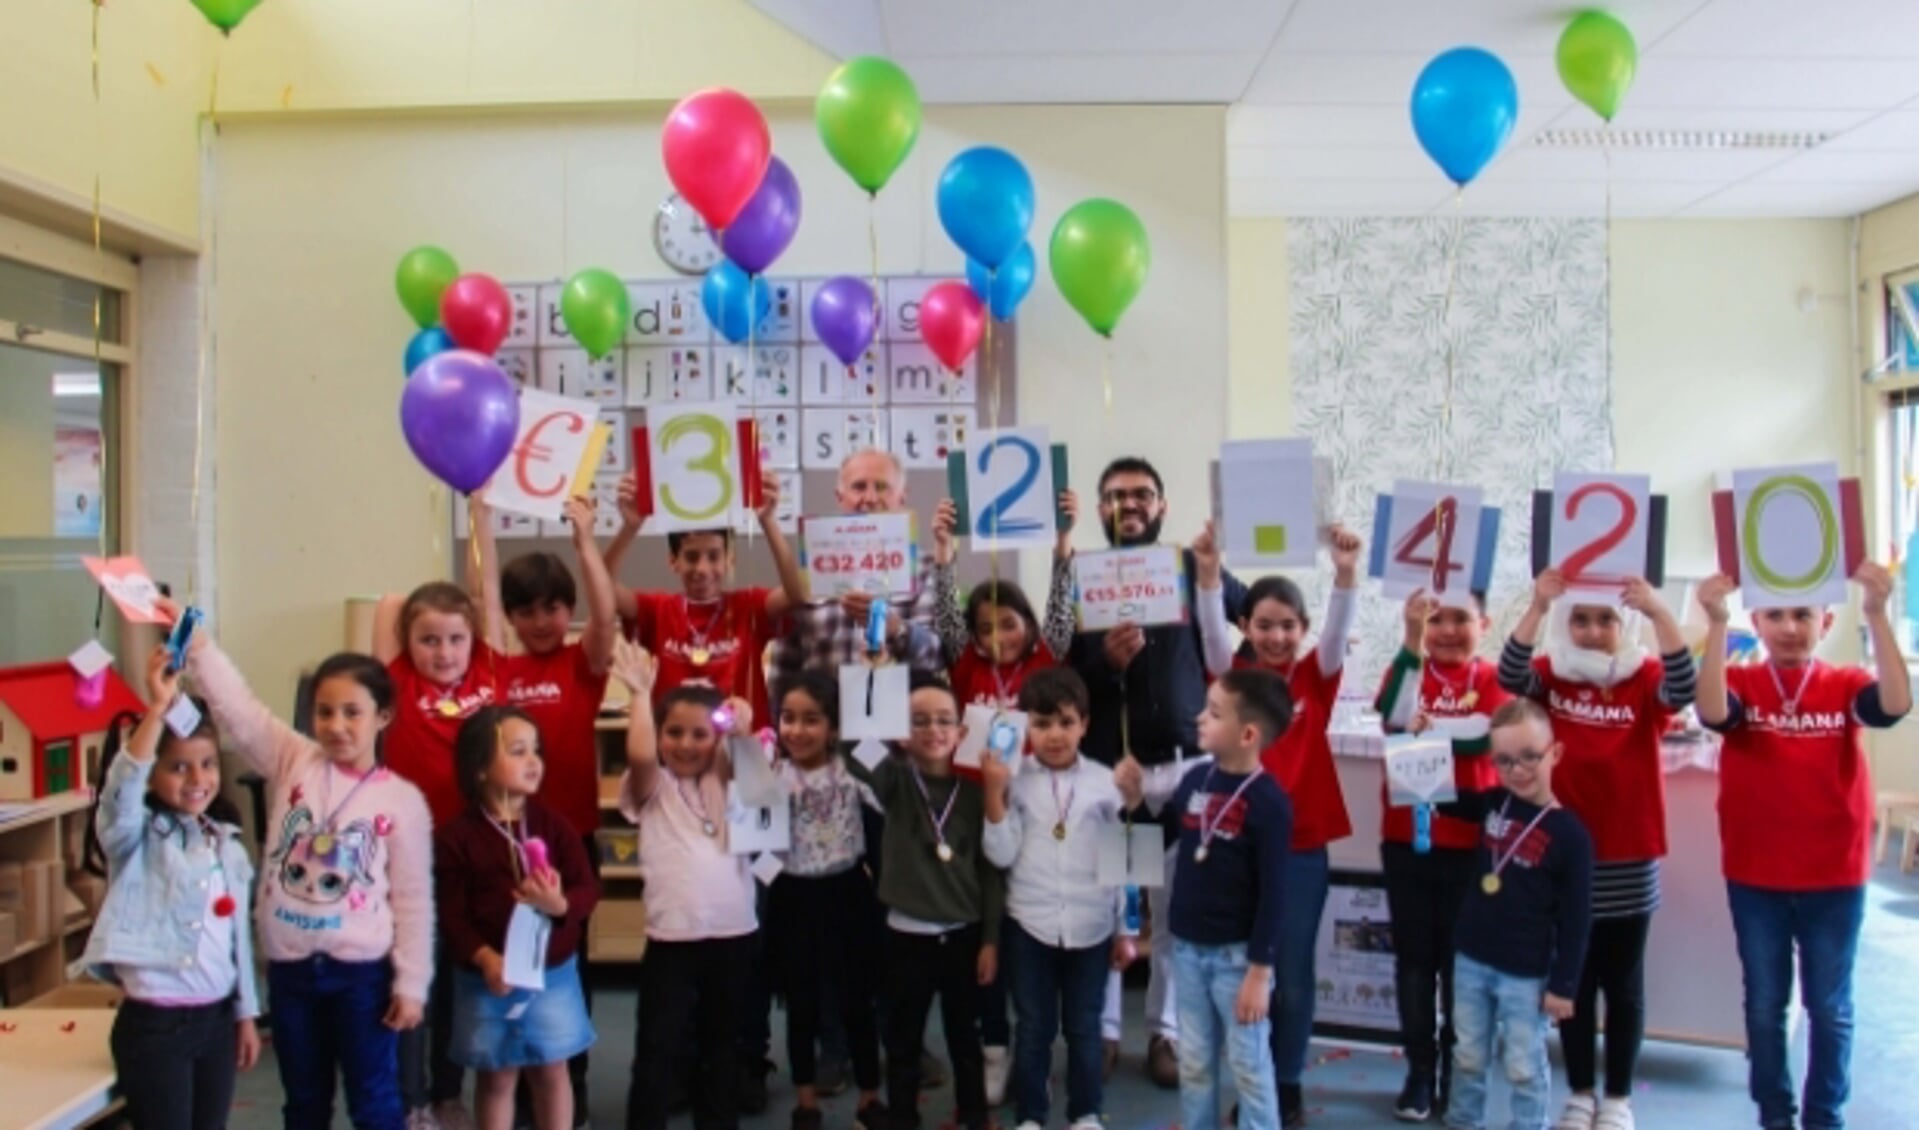 De kinderen van Al Amana vieren het succes van hun prachtige actie. (Foto Ilhame Arab)